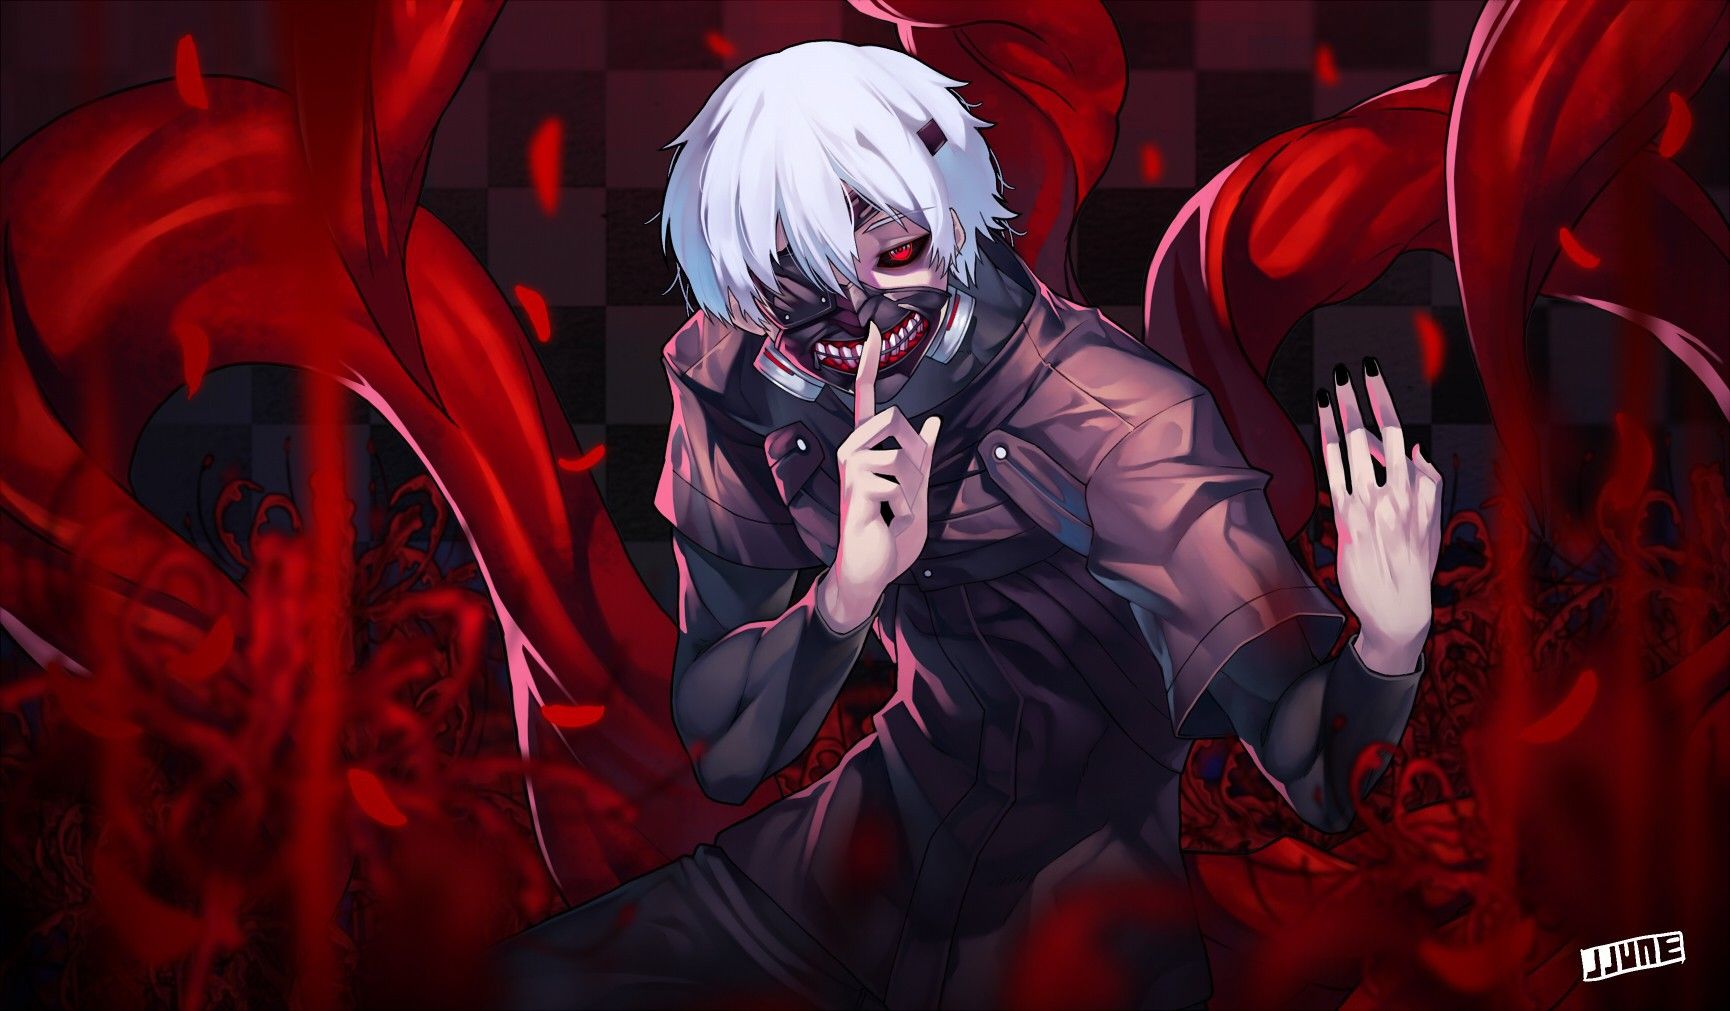 Evil Anime Boy Wallpapers - Top Những Hình Ảnh Đẹp